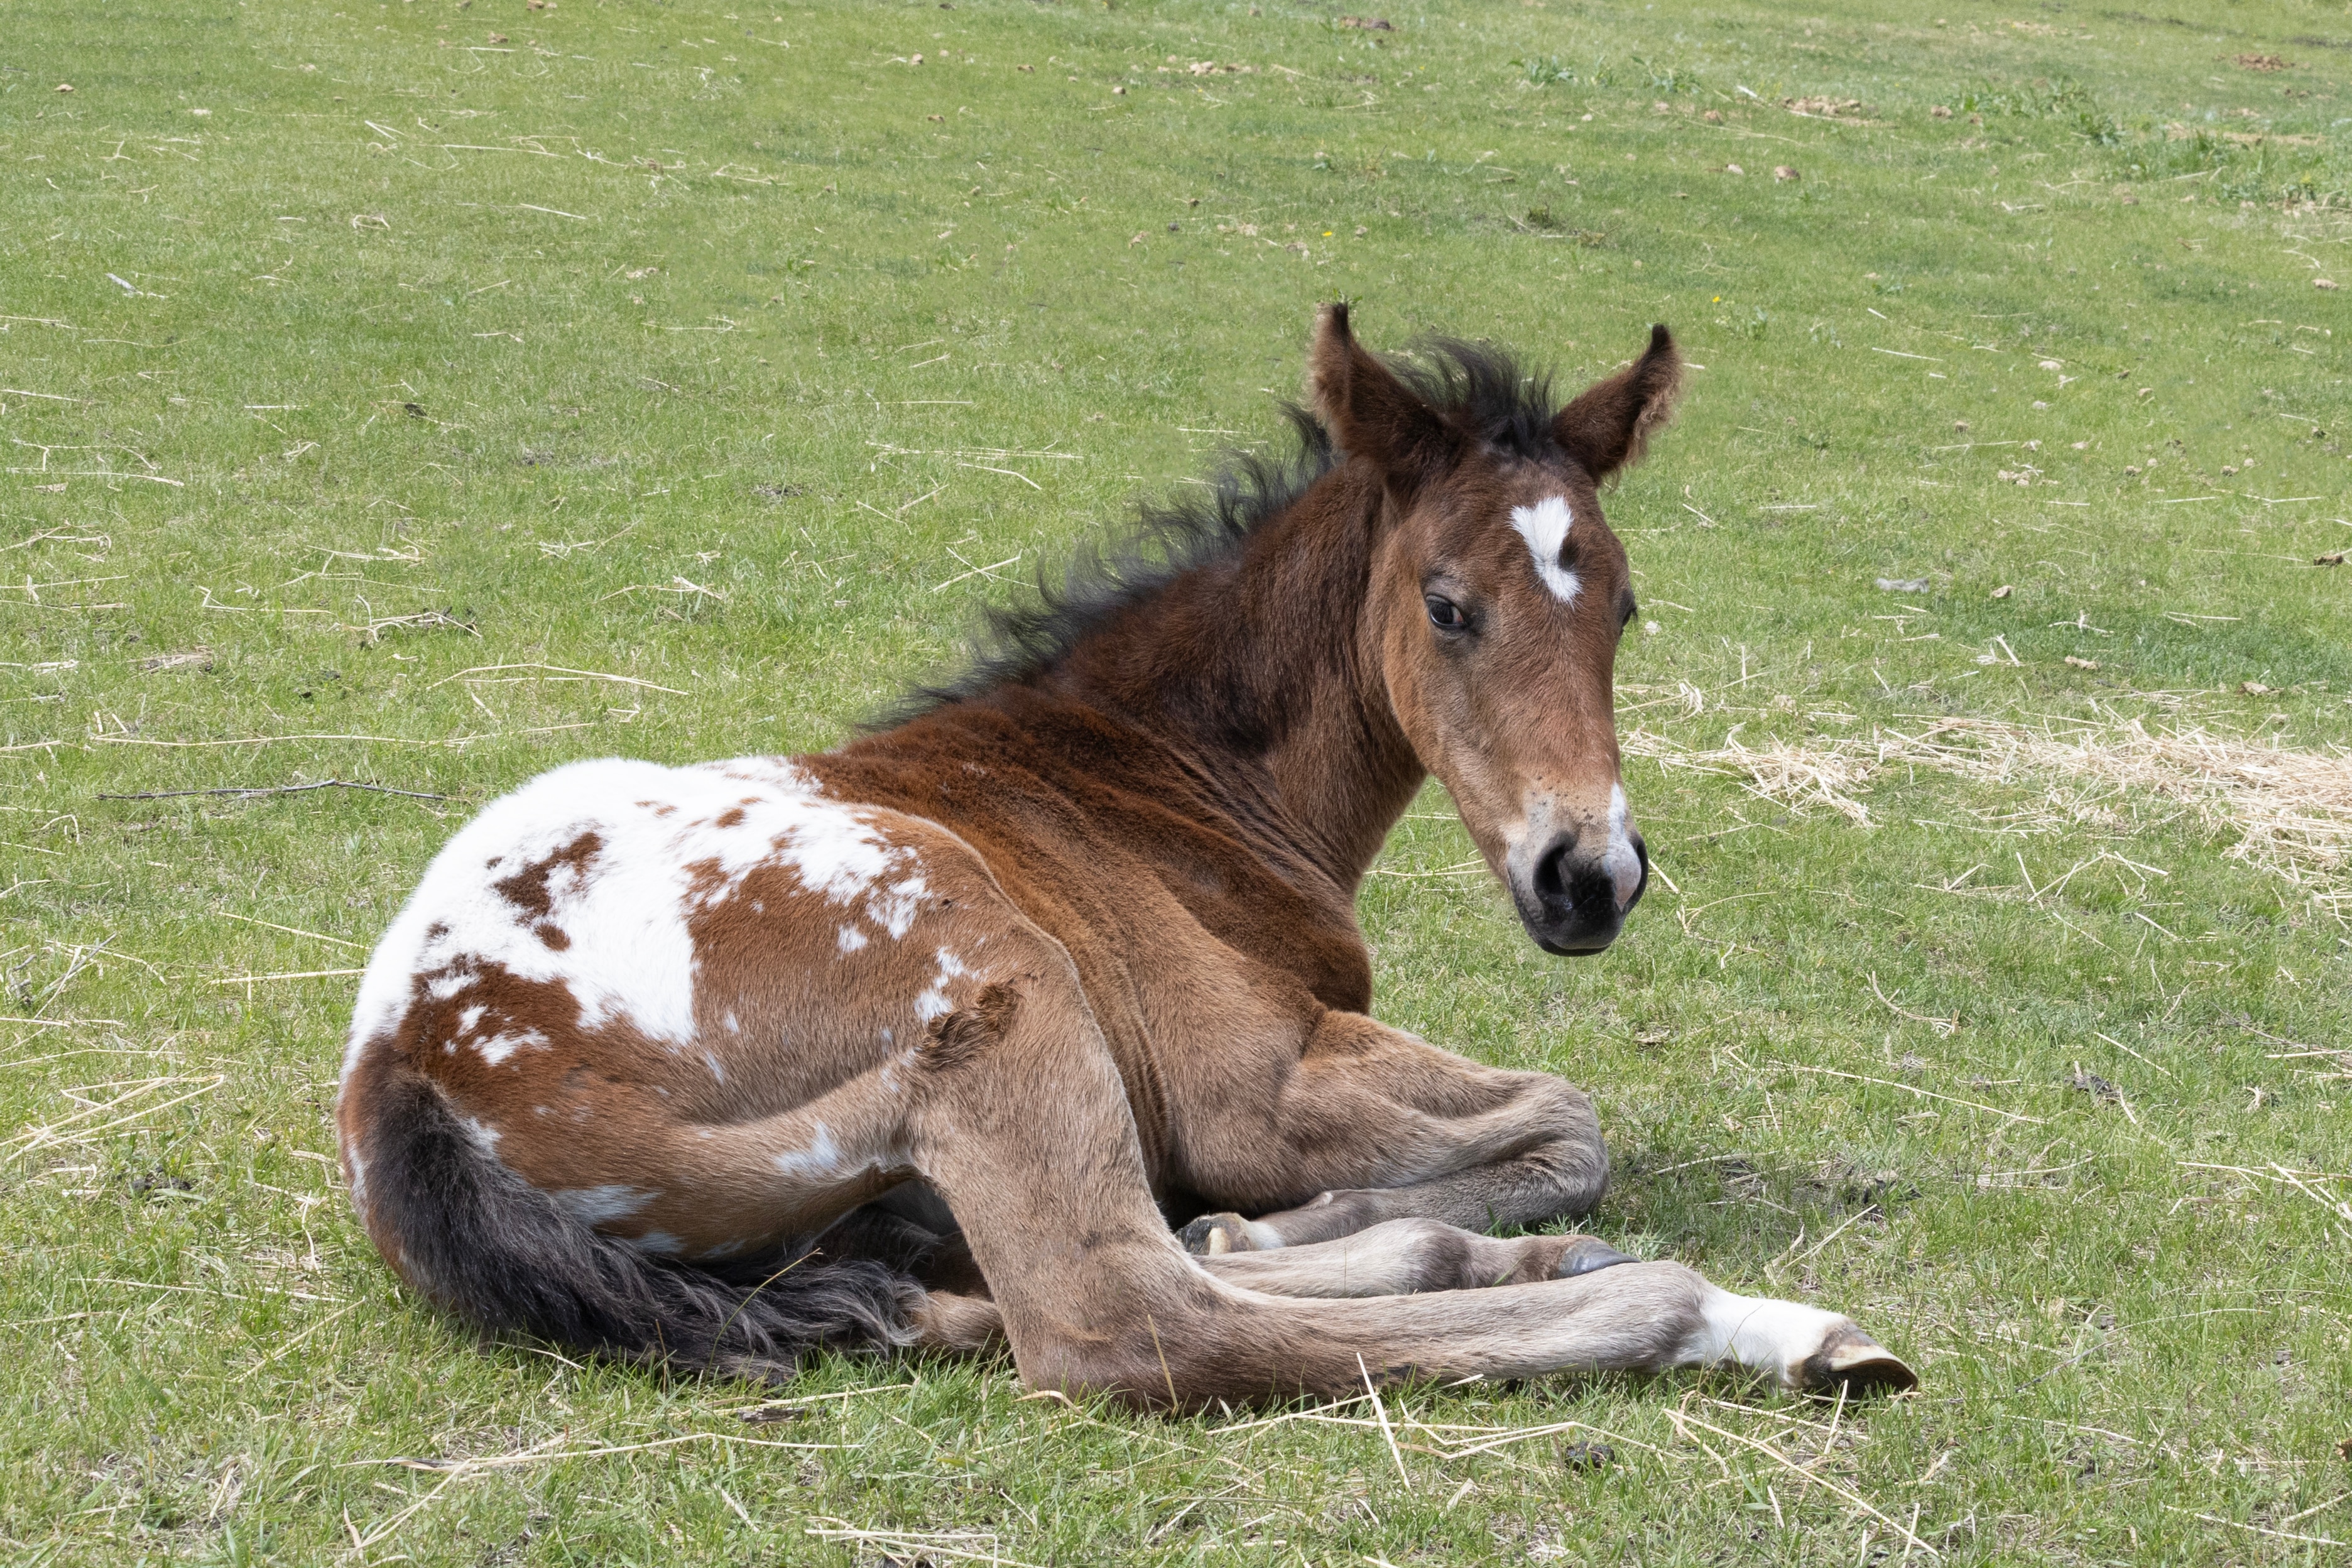 Appaloosa foal lying in grass